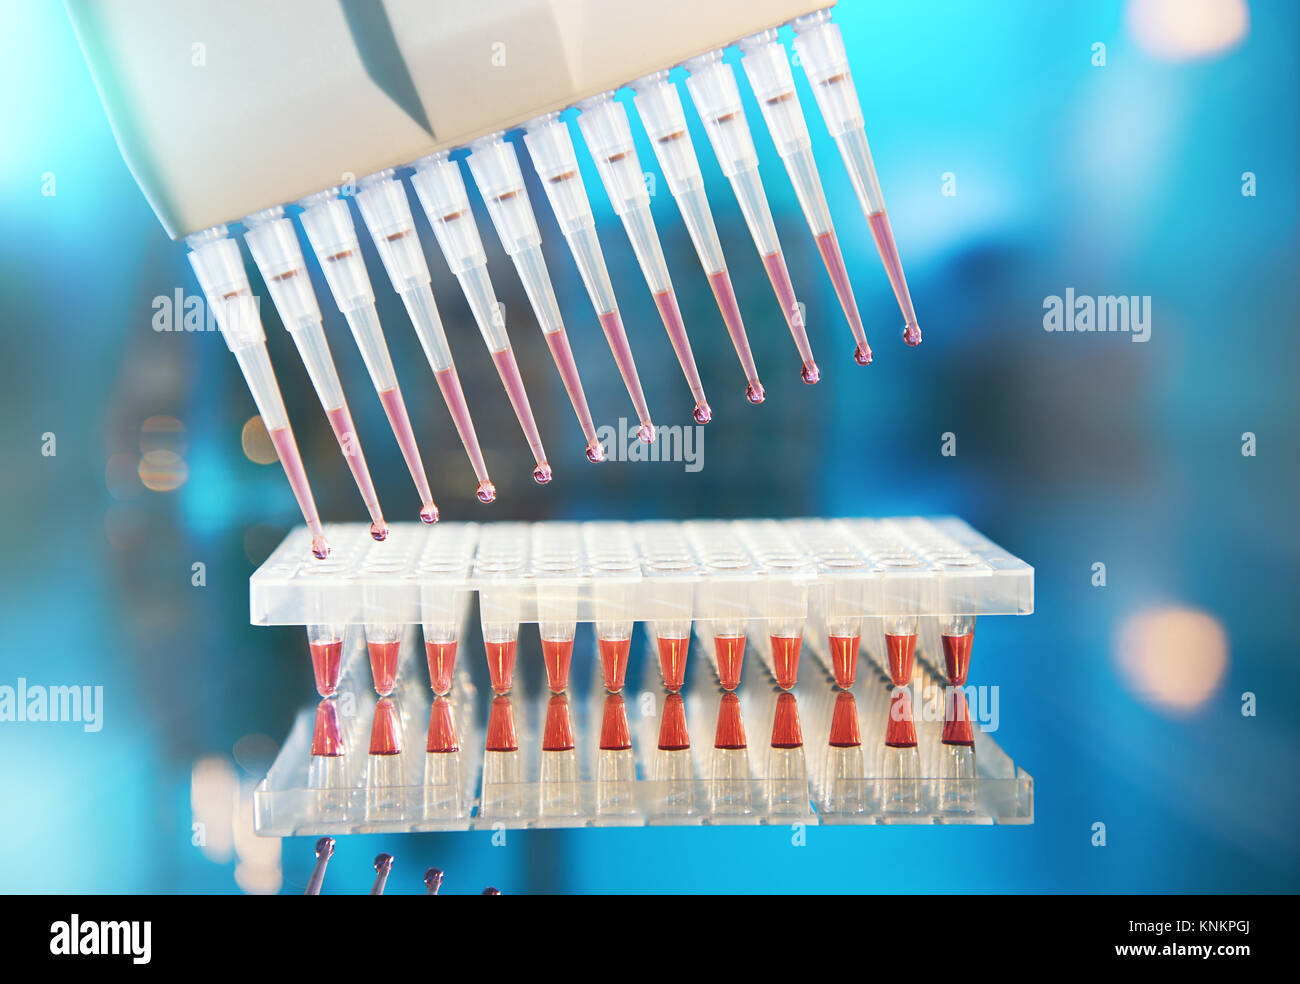 Arrière-plan scientifique. Pipettes multicanaux rempli de mélange de réaction pour amplifier l'ADN dans les puits en plastique. Cette image est tonique. Banque D'Images